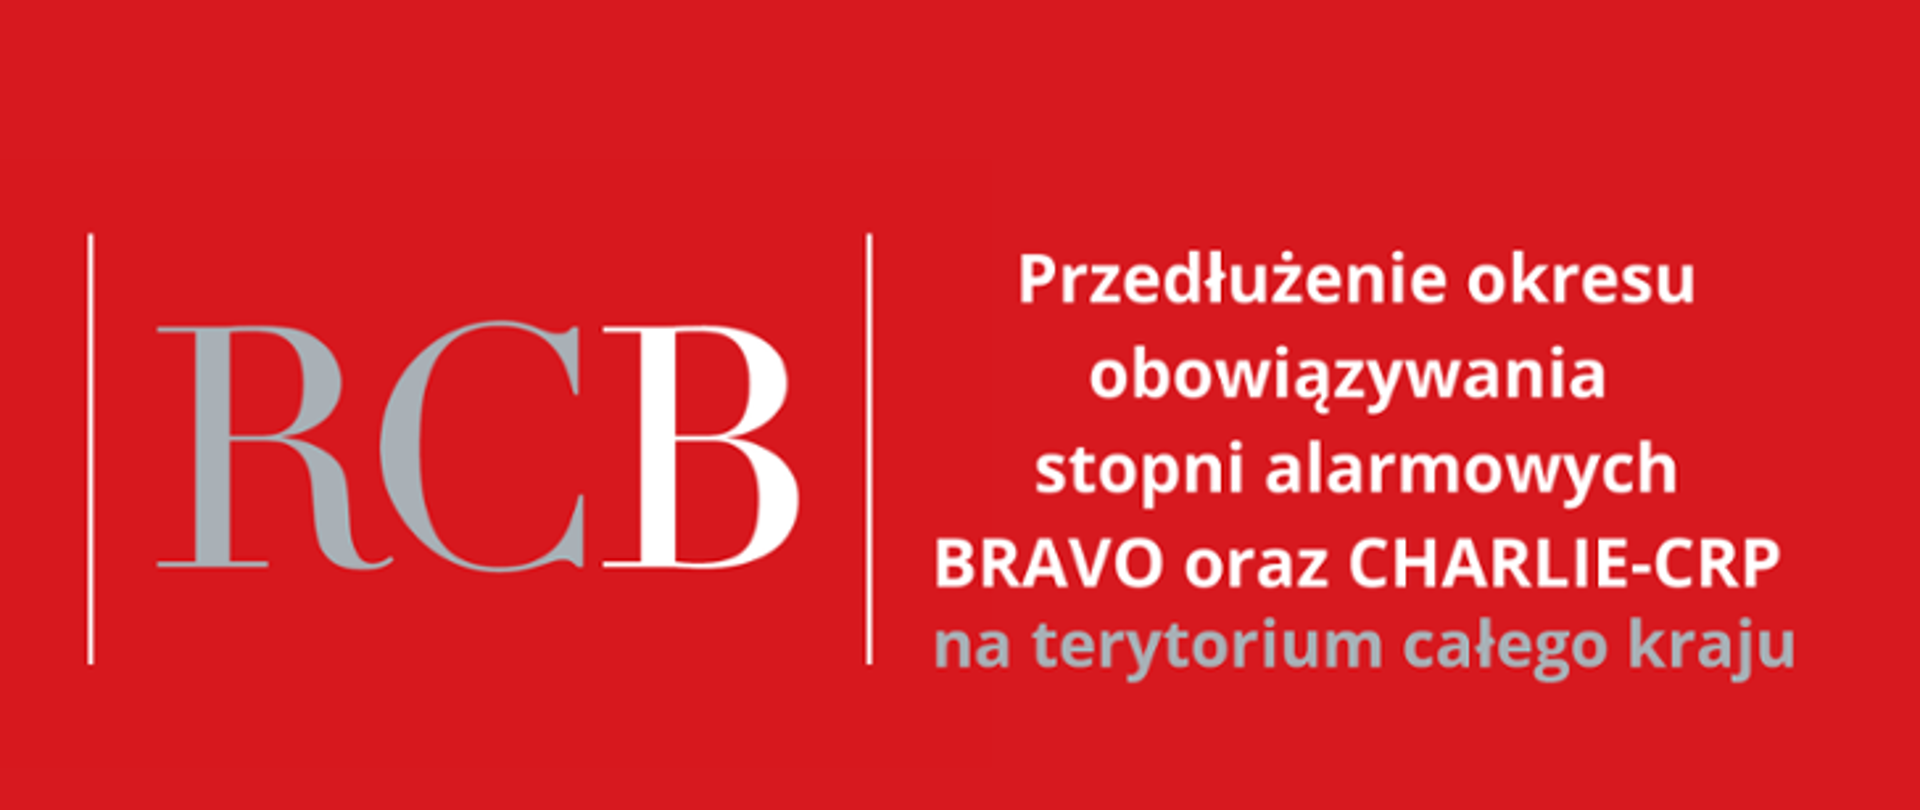 Baner dotyczący przedłużenia obowiązywania stopni alarmowych BRAVO i CHARLIE-CRP zawiera białe i szare litery na czerwonym tle, w tym skrót RCB oznaczający Rządowe Centrum Bezpieczeństwa